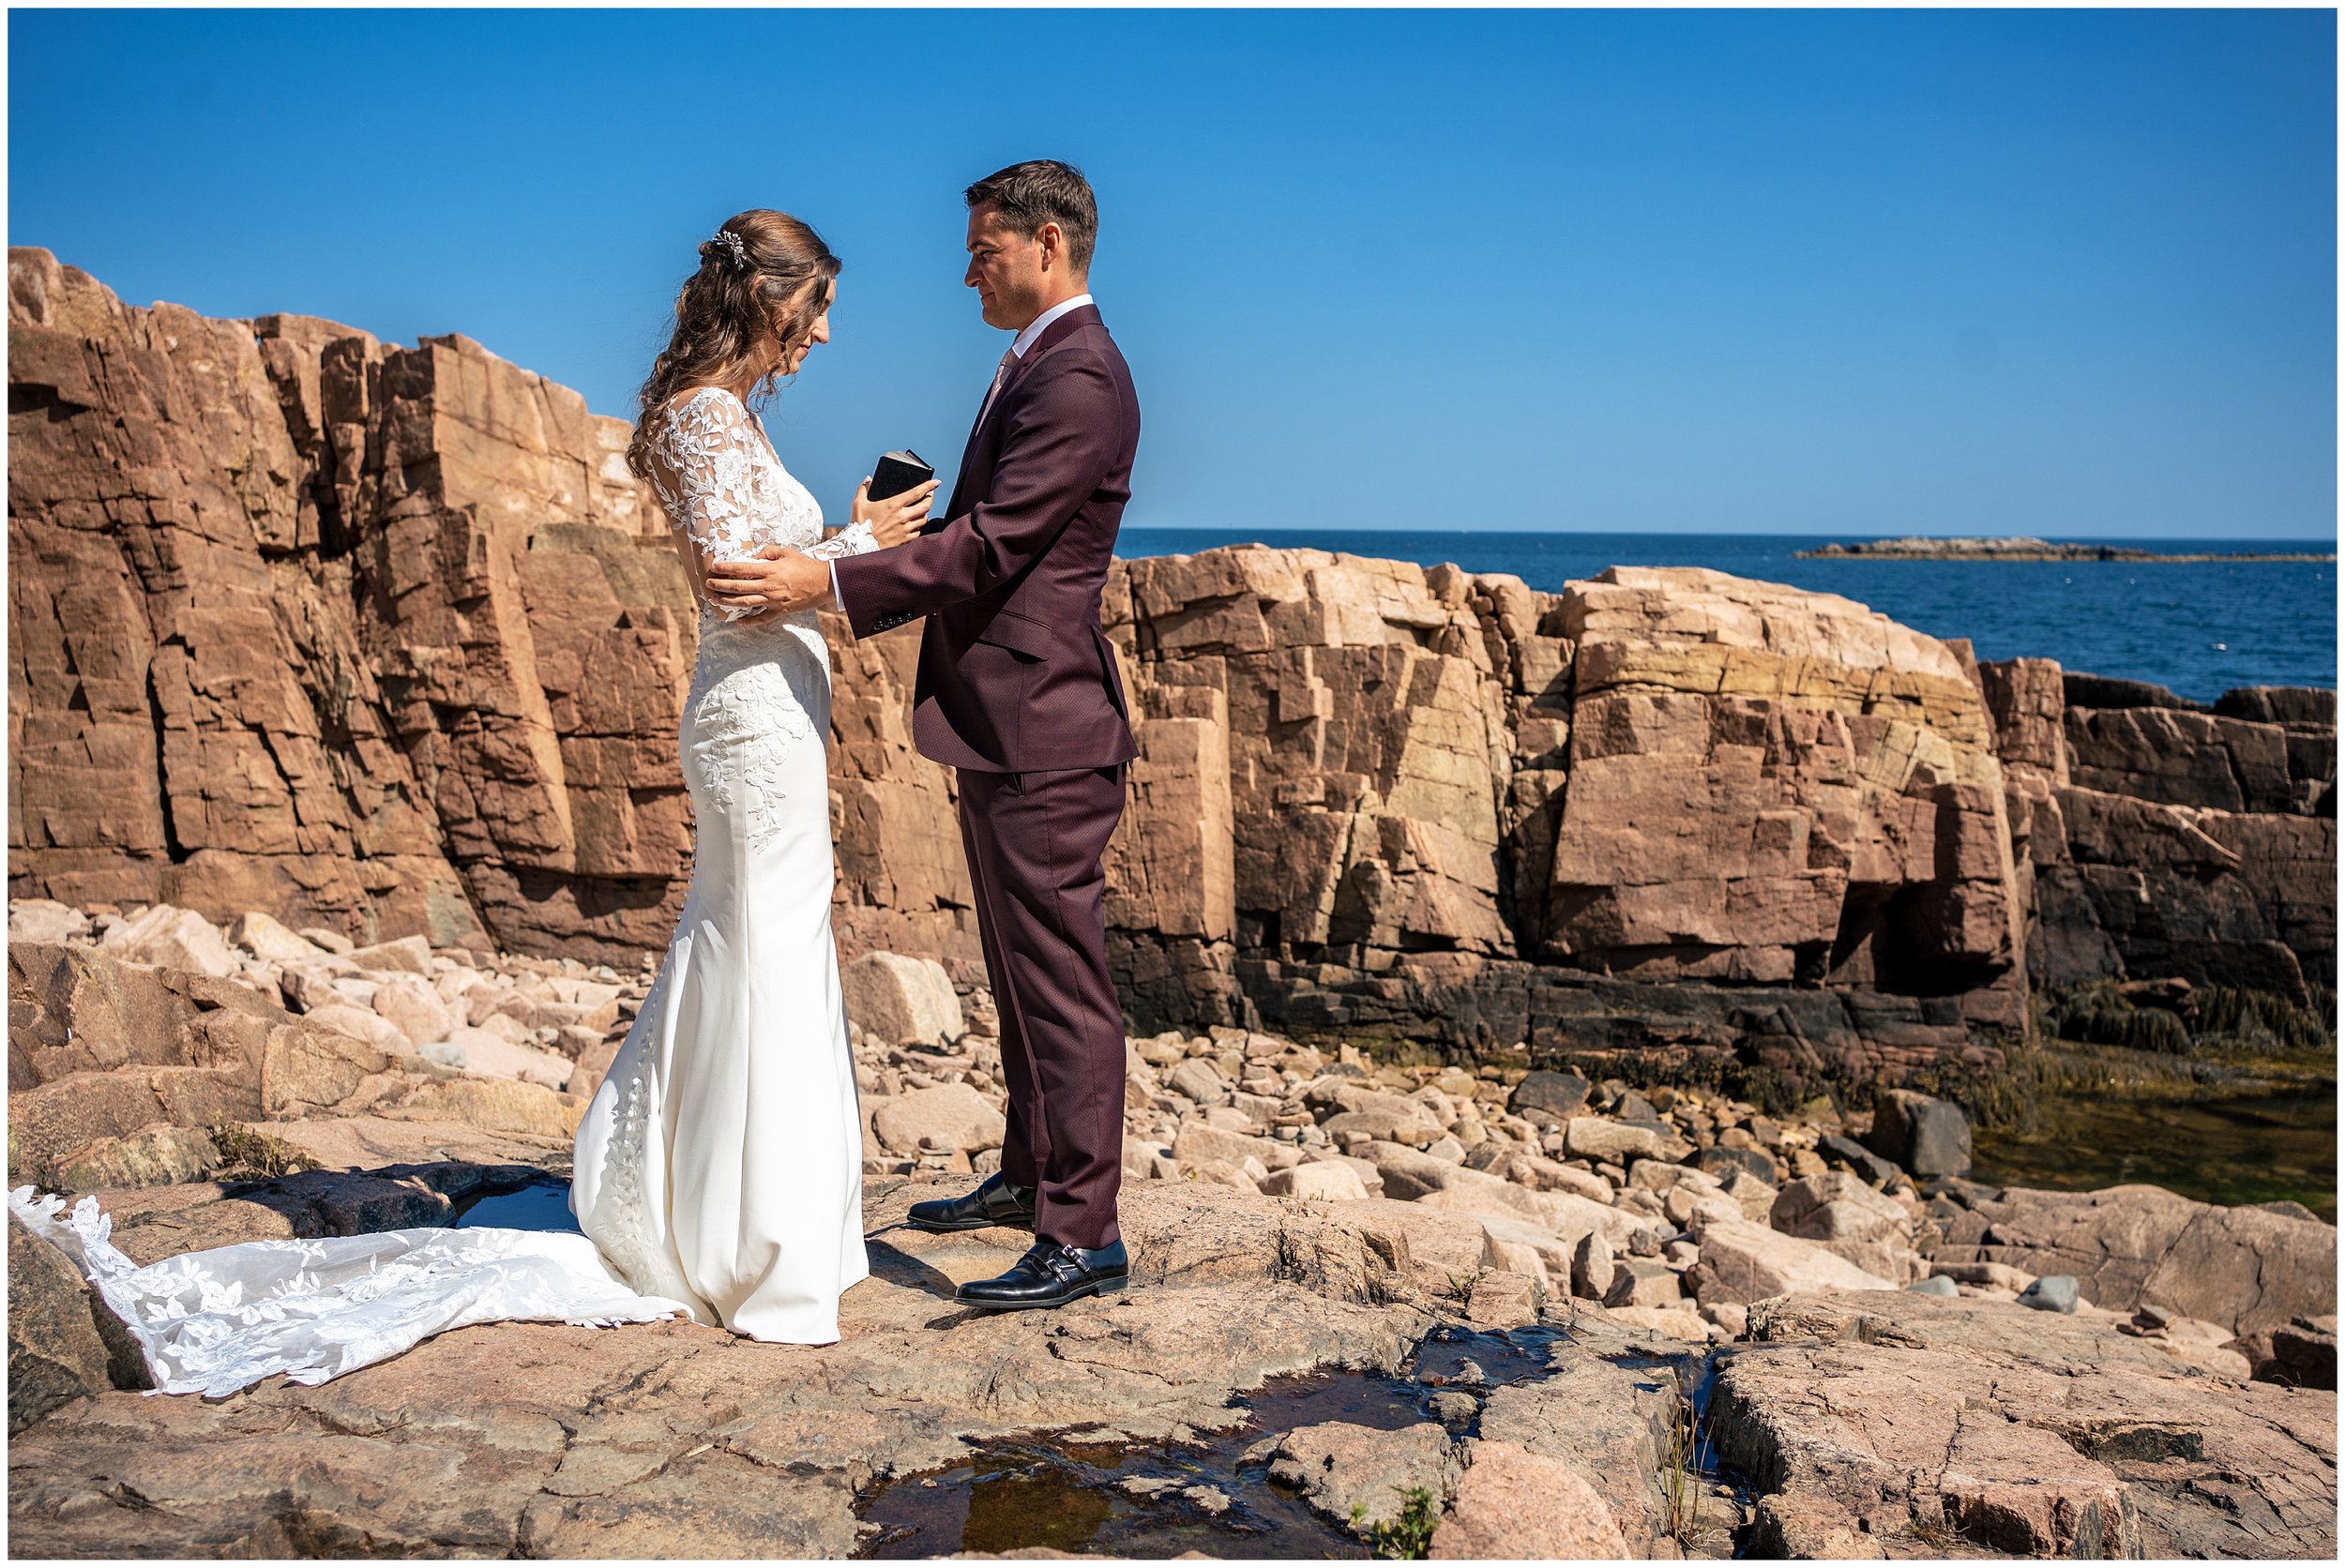 Acadia National Park Wedding Photographers, Bar Harbor Wedding Photographers, Two Adventurous Souls- 082423_0001.jpg